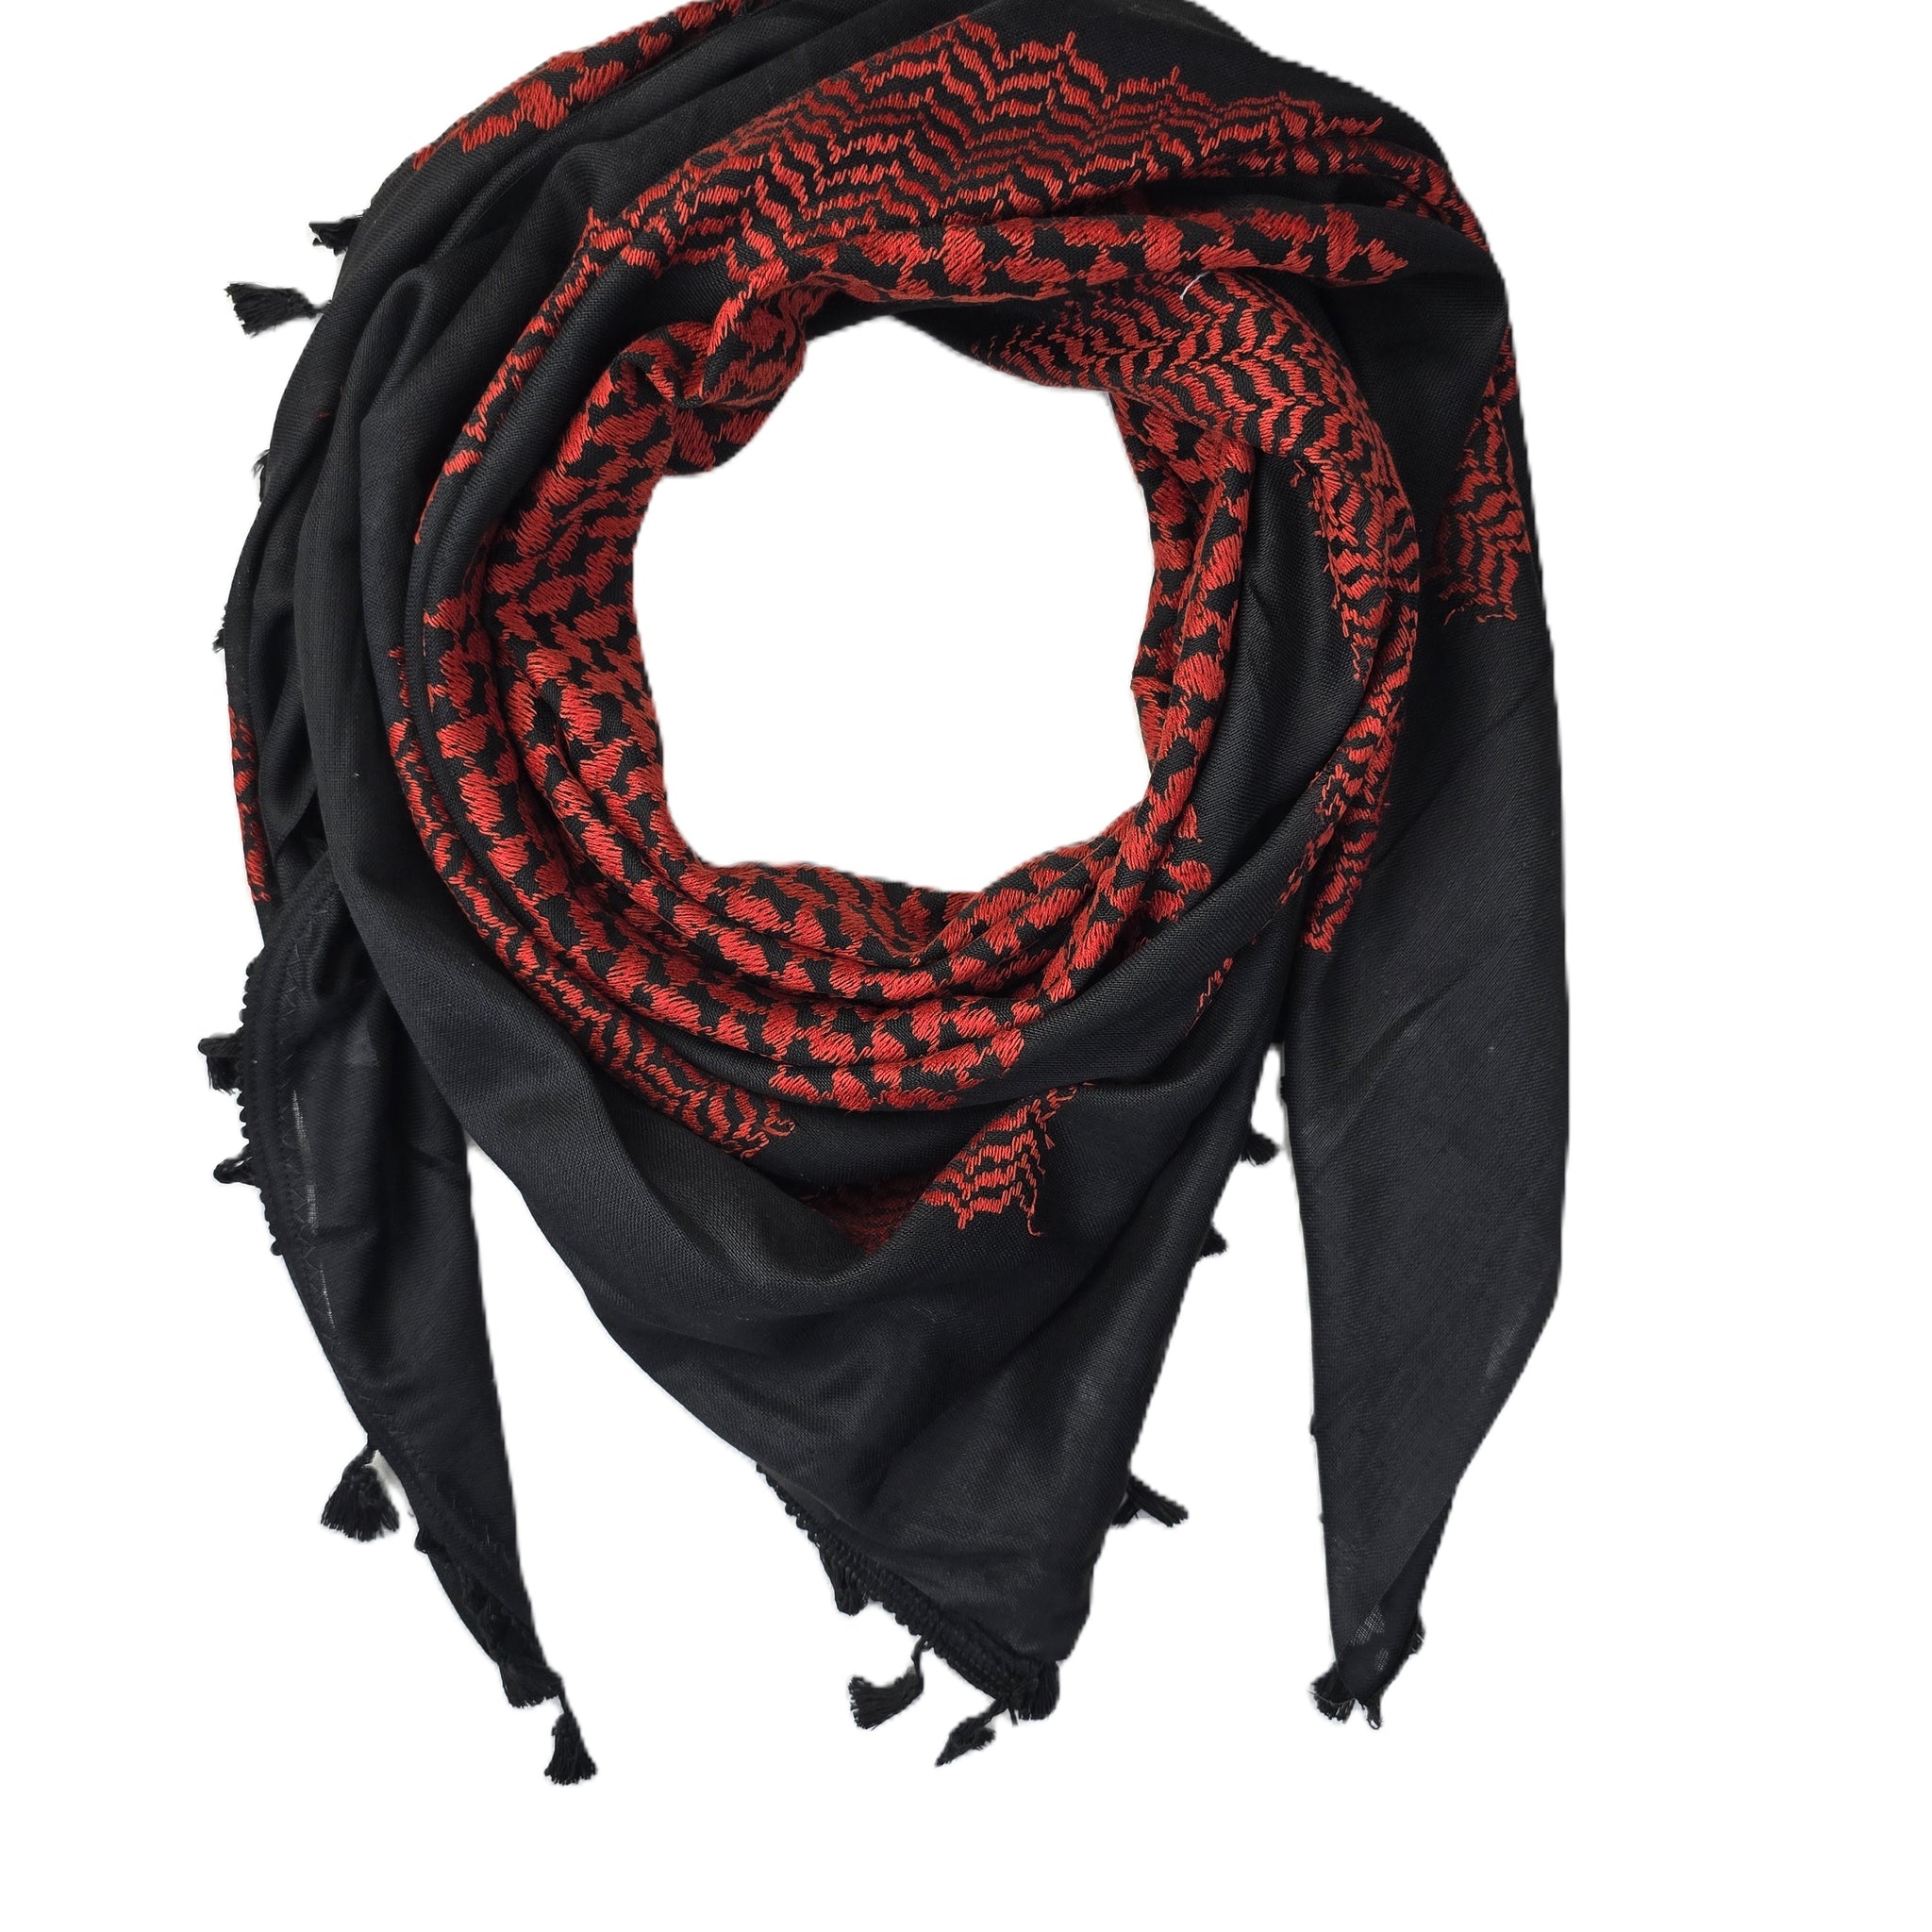 palestanian red and black keffiyeh scarf rajaeen